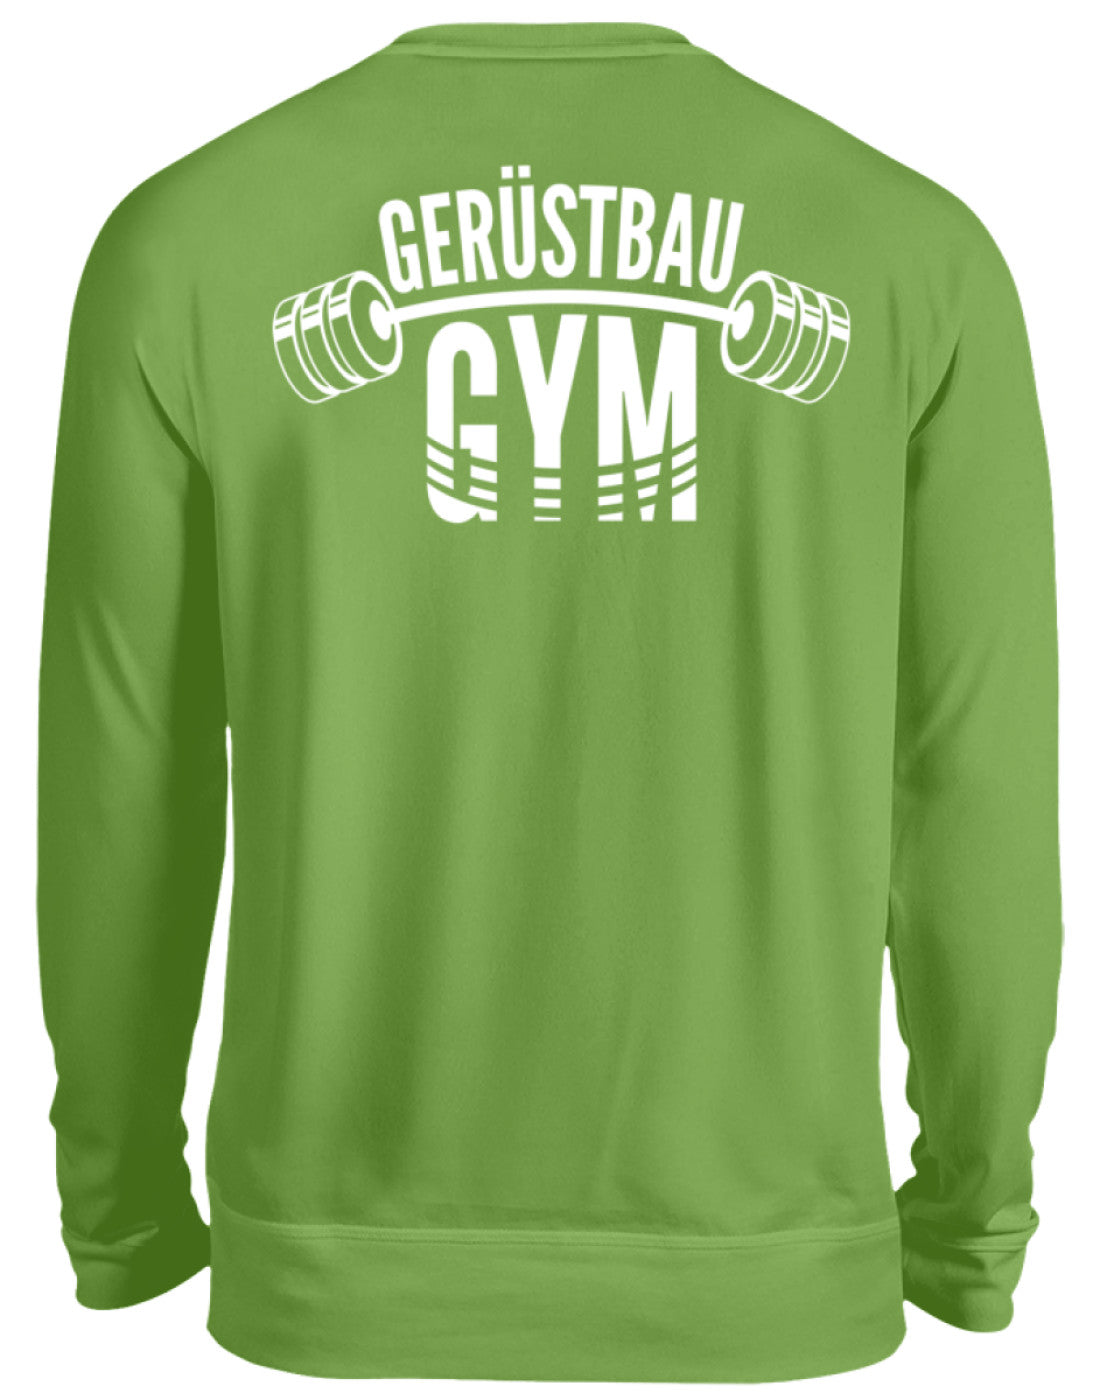 Gerüstbau / GYM   - Unisex Pullover €34.95 Gerüstbauer - Shop >>